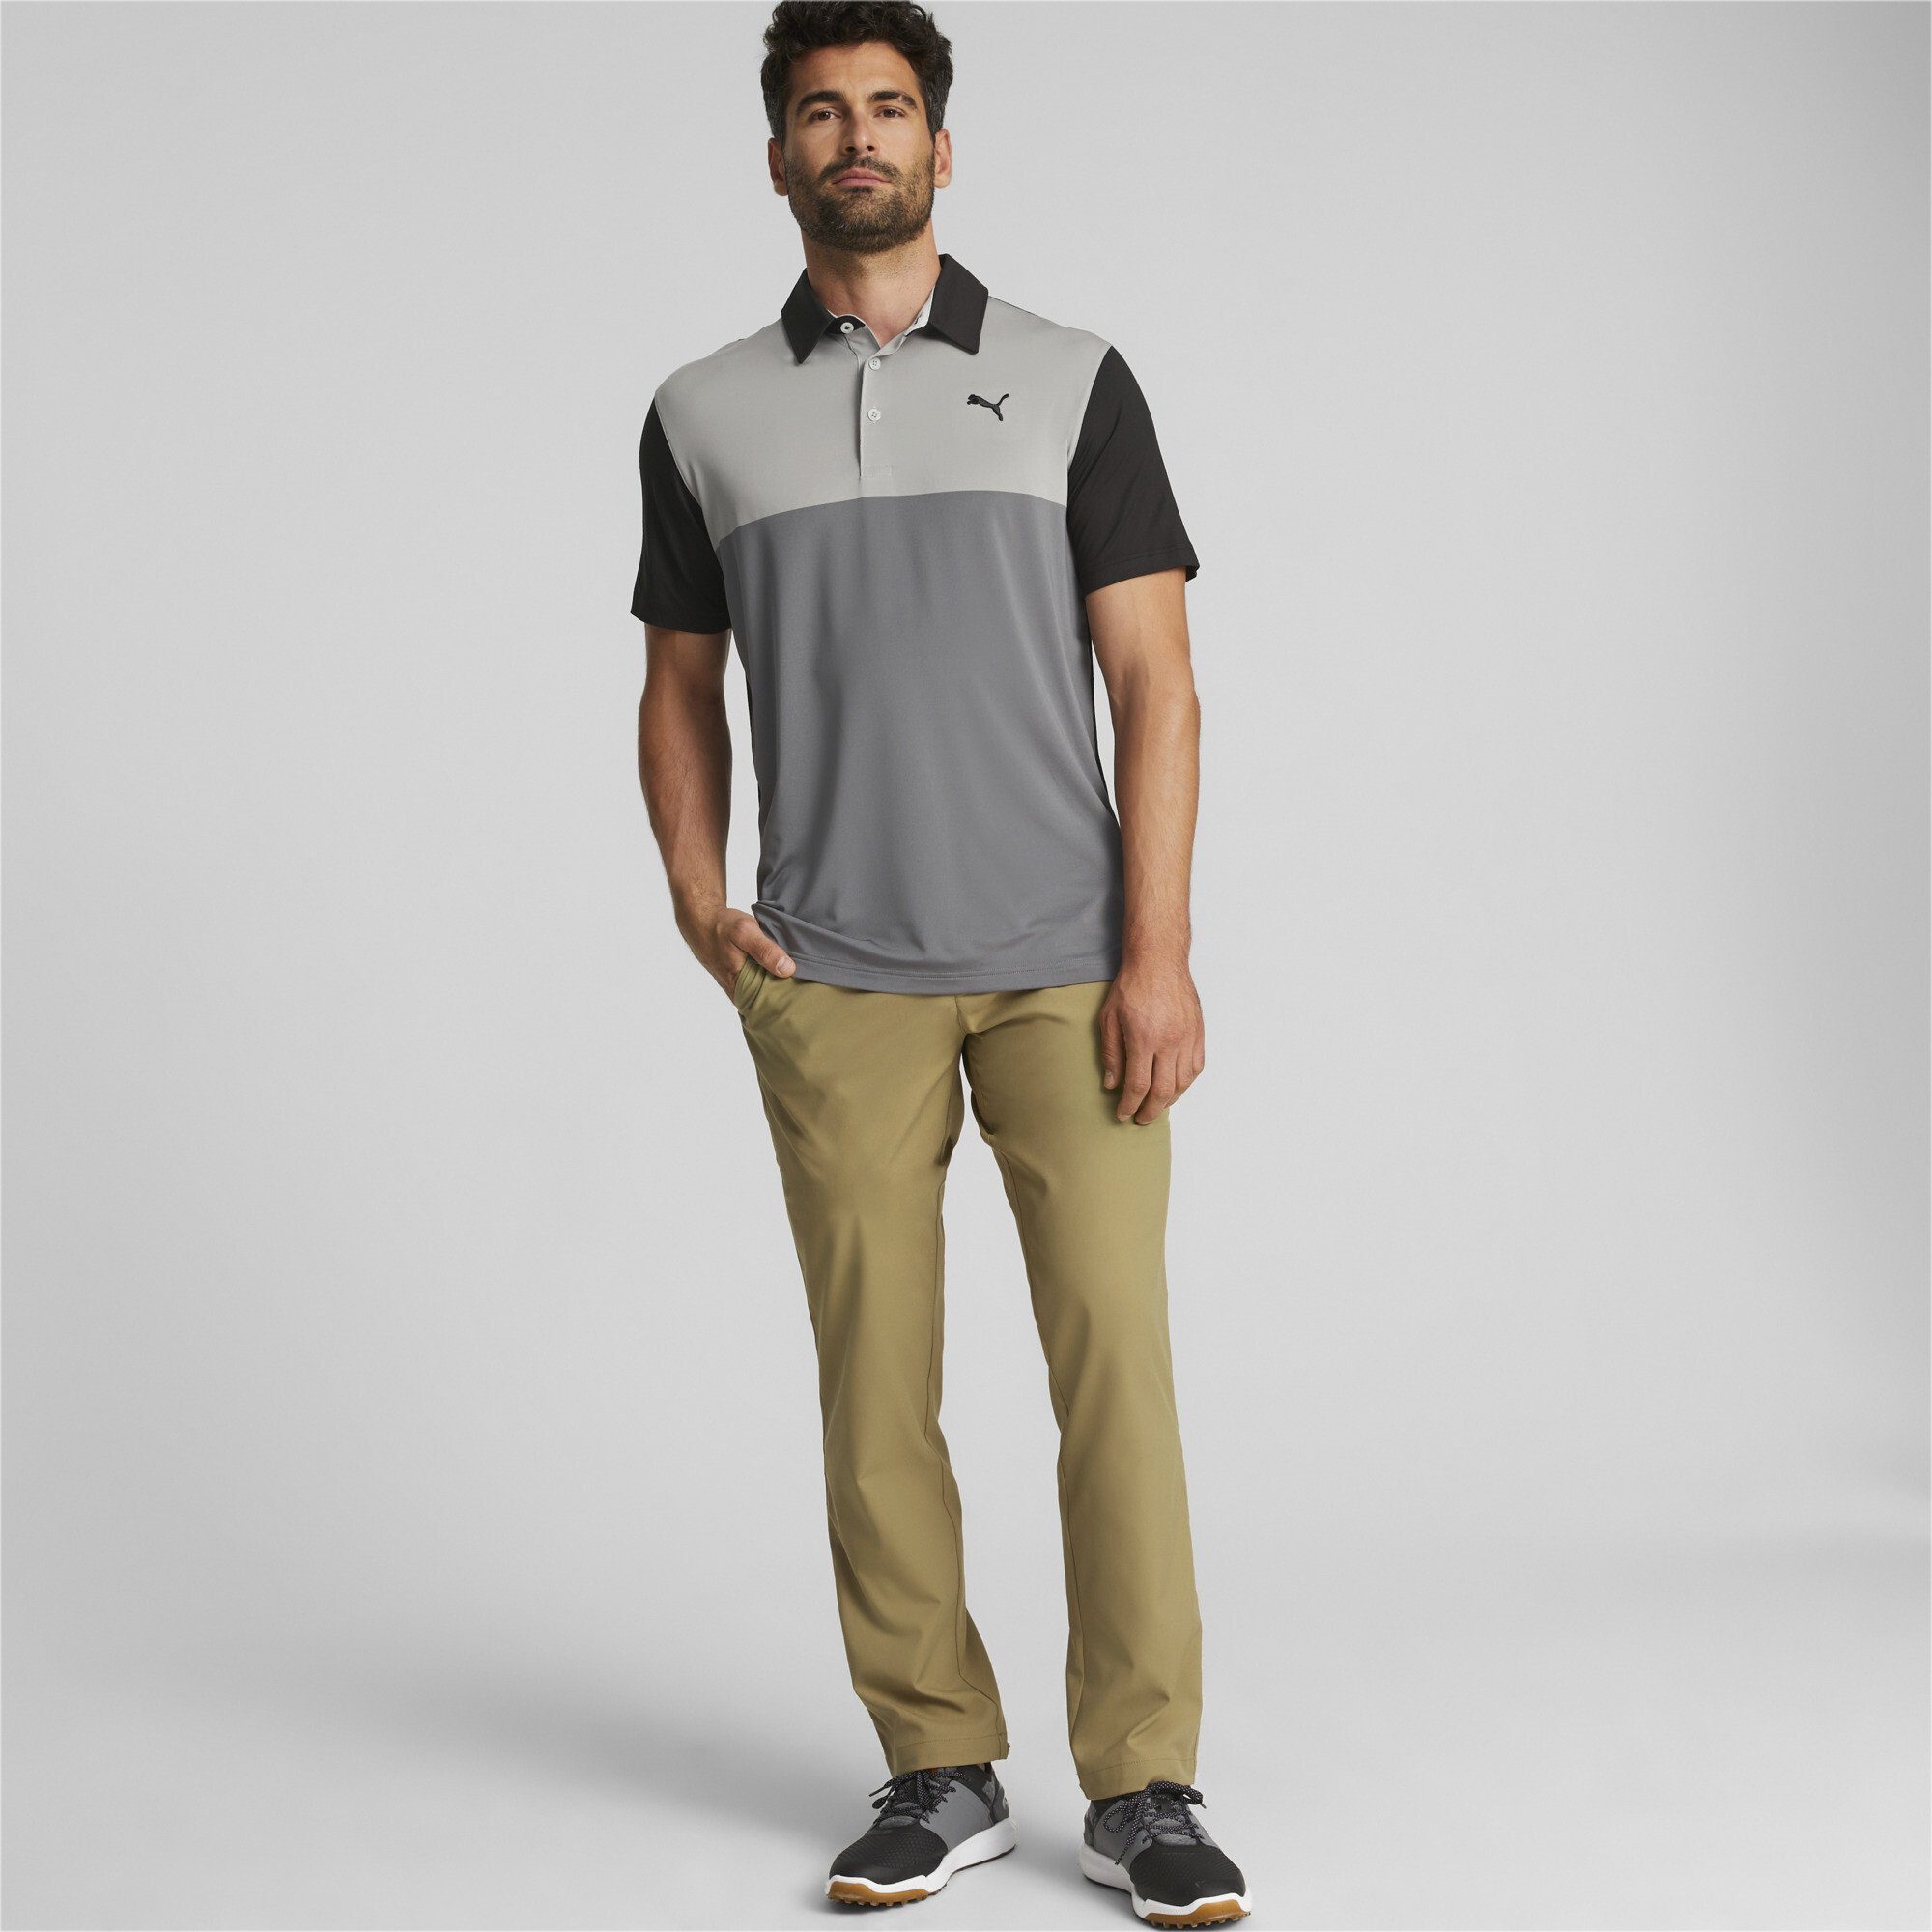 Colourblock Poloshirt PUMA Gray Shade Herren Cloudspun Golfpolo Quiet Black